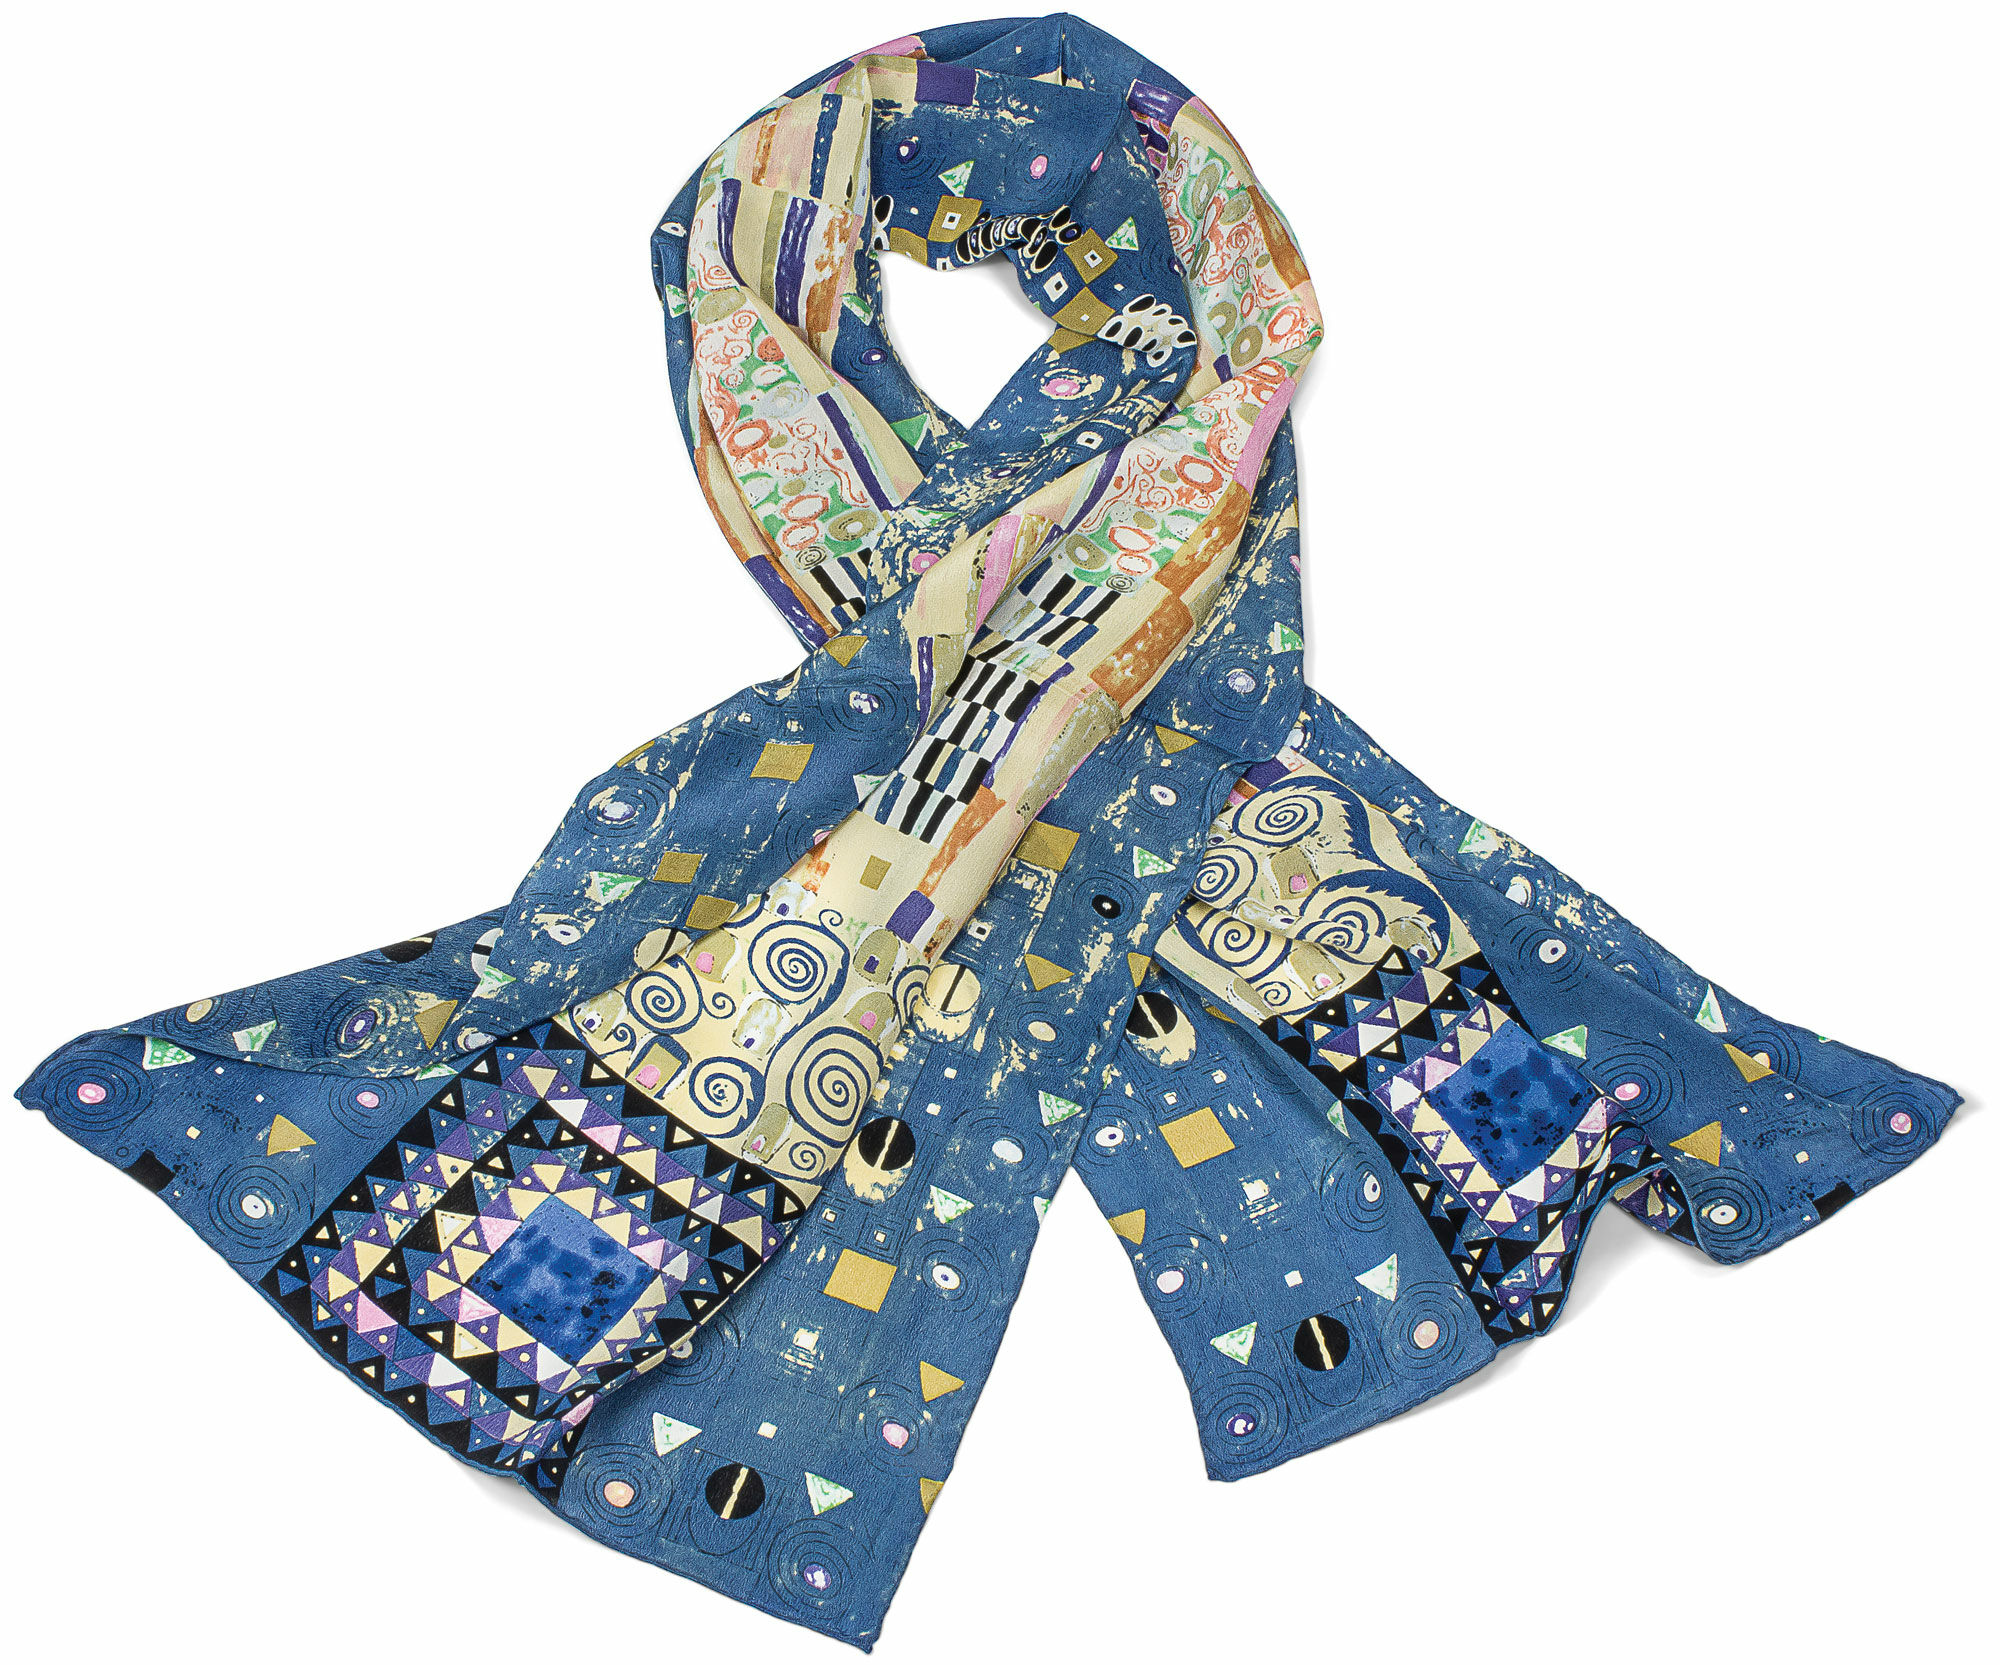 Silketørklæde "Stoclet Frieze" von Gustav Klimt